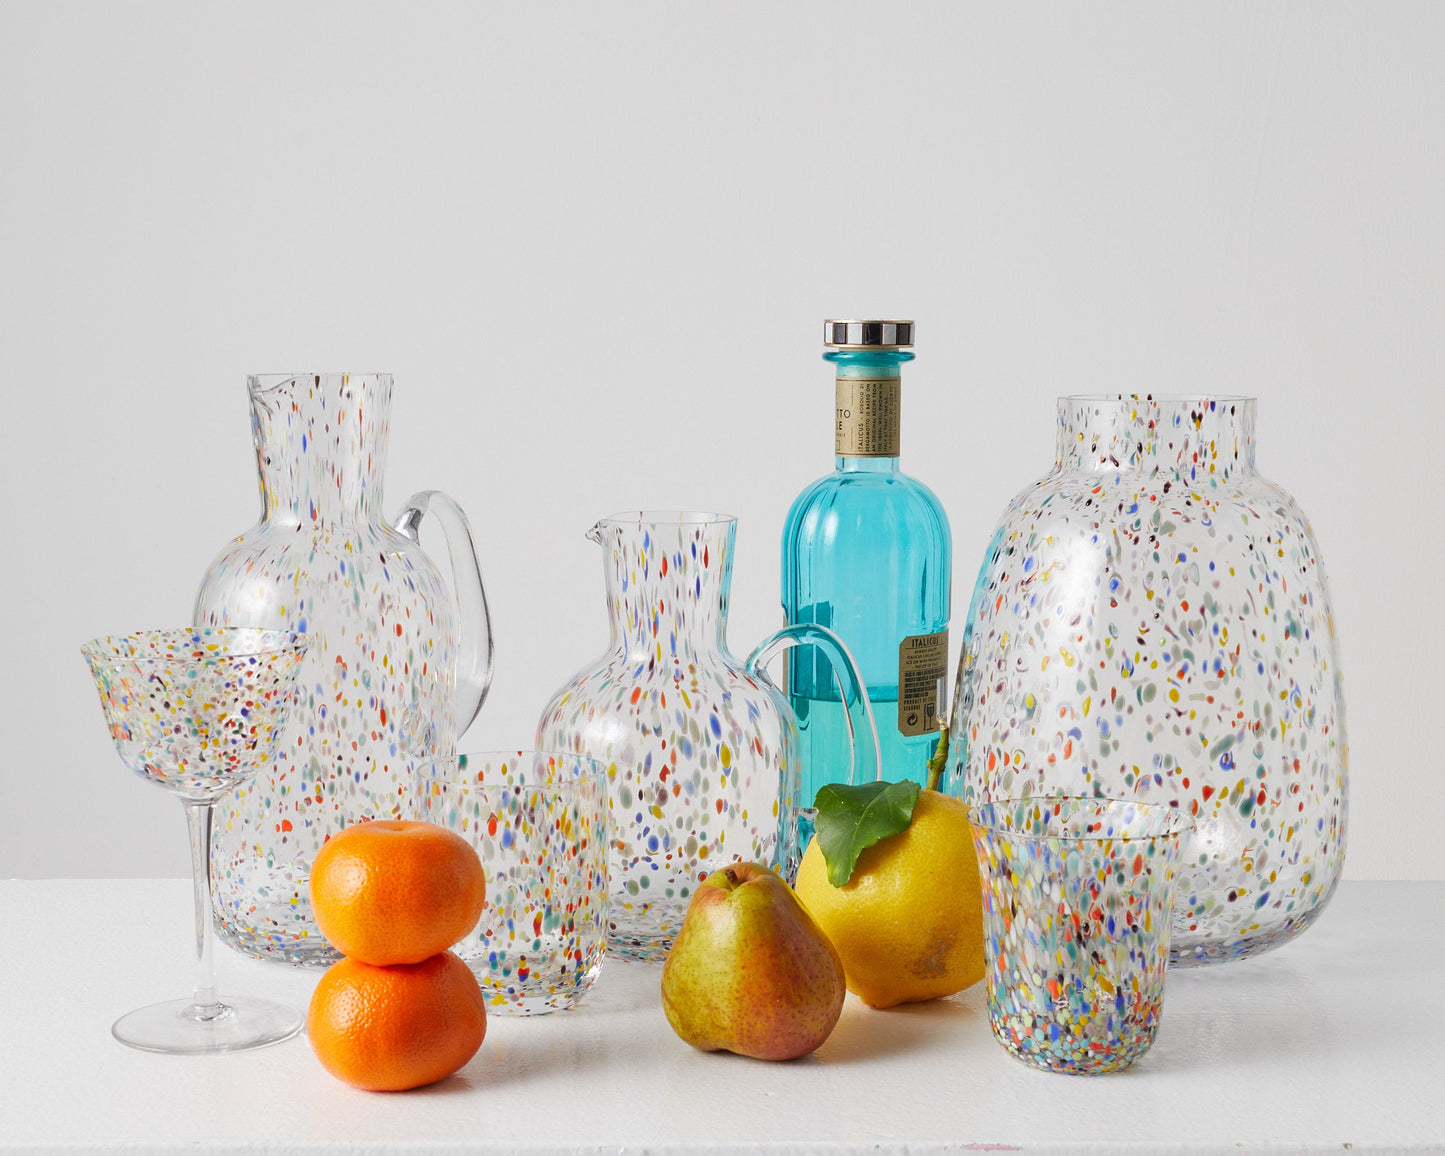 Kip & Co Speckle Vase